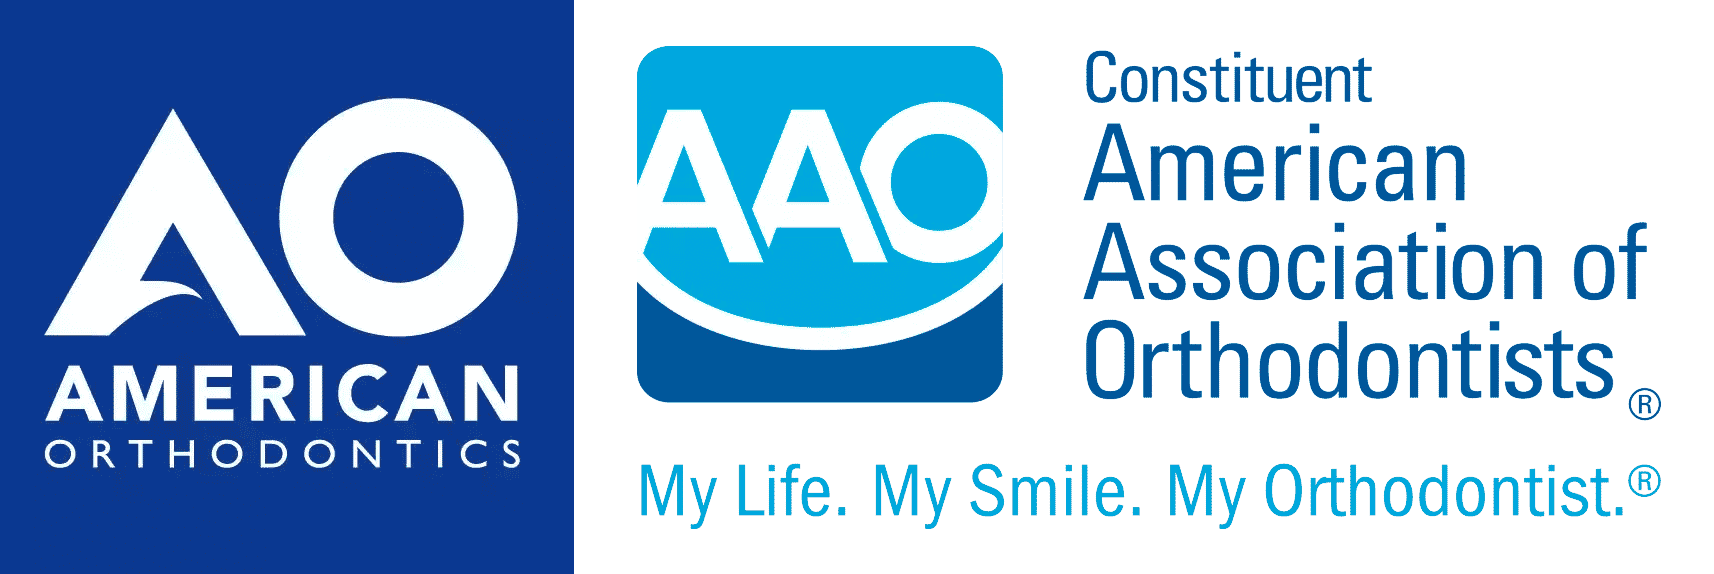 AO and AAO Logos